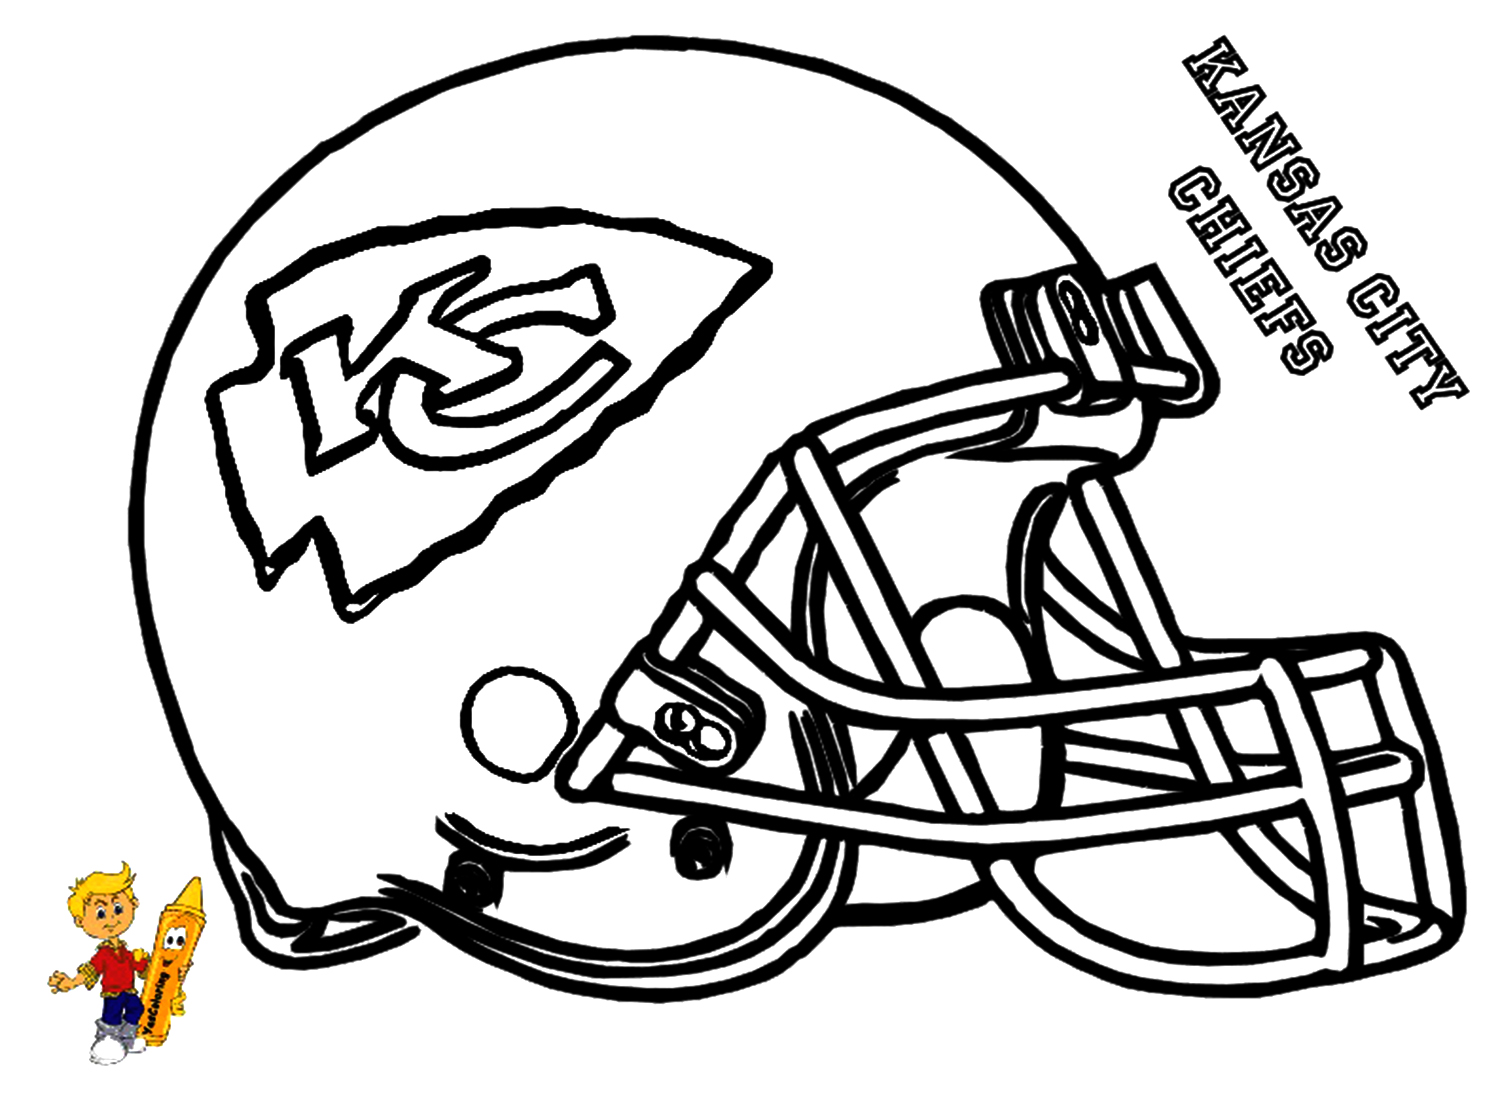 Распечатанный шлем «Канзас-Сити Чифс» от команды «Канзас-Сити Чифс»